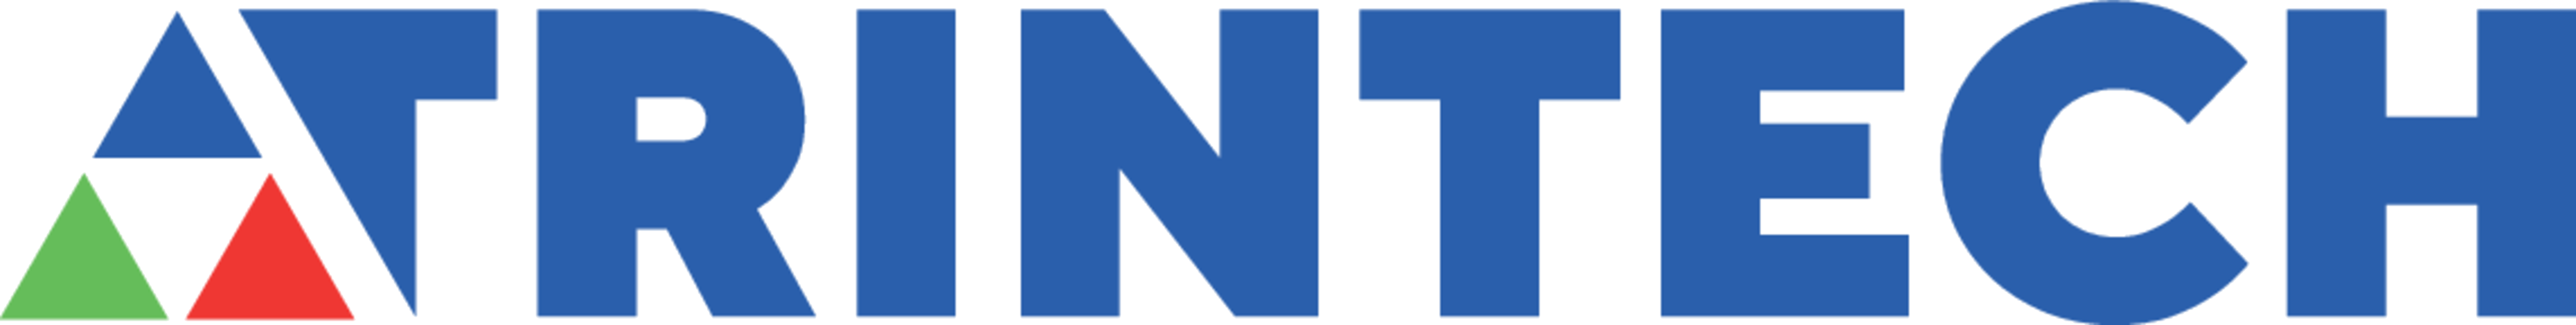 Logo.png (1)